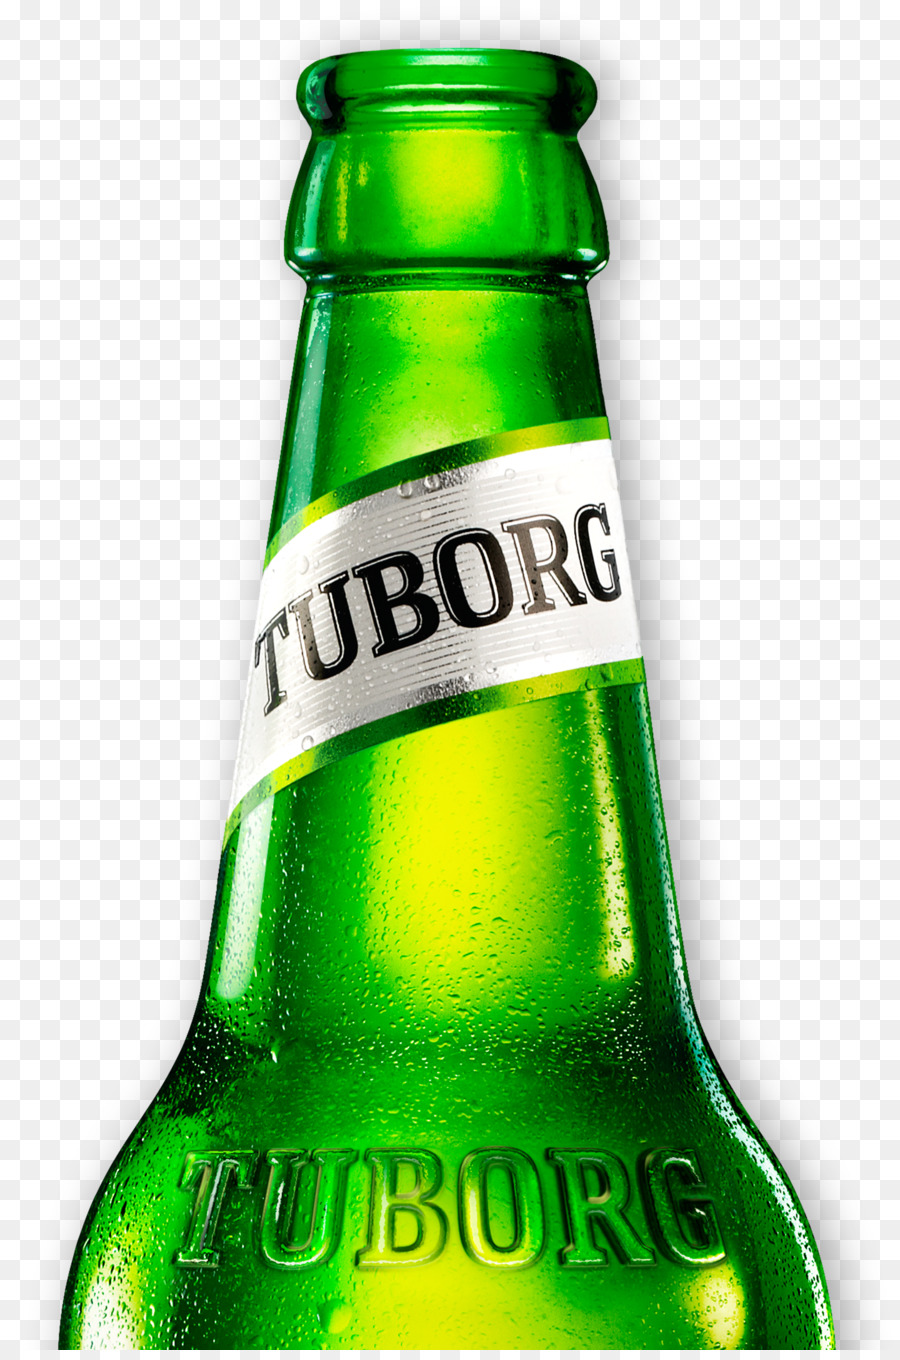 Турбо пиво. Tuborg пиво butilka. Пиво туборг Грин. Туборг пиво в стеклянной бутылке.